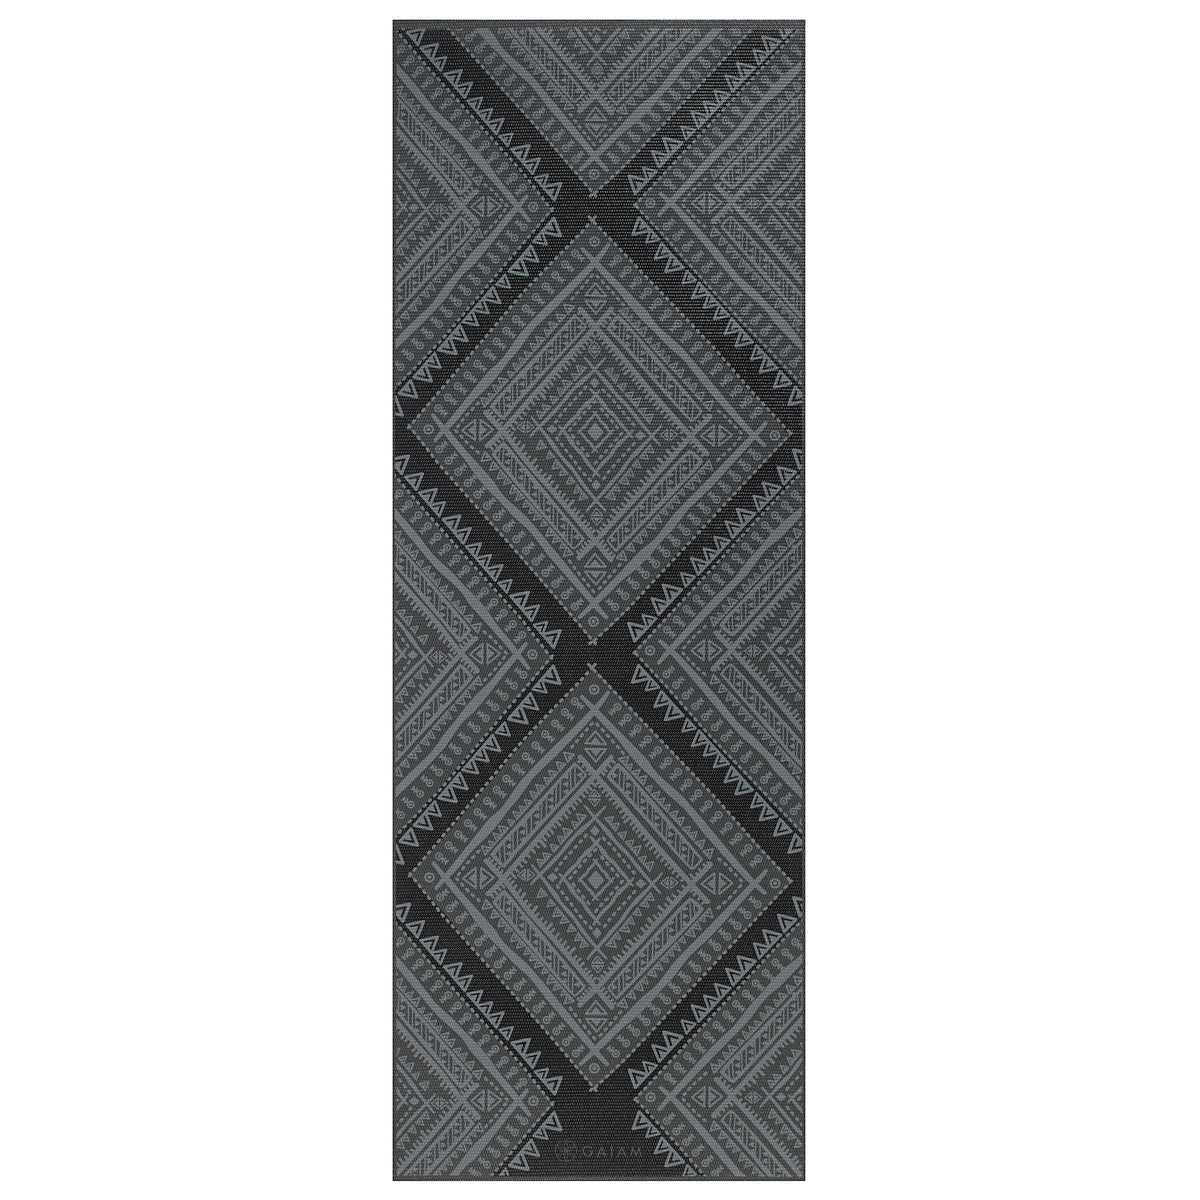 Premium Navajo Yoga Mat (6mm) top grey side